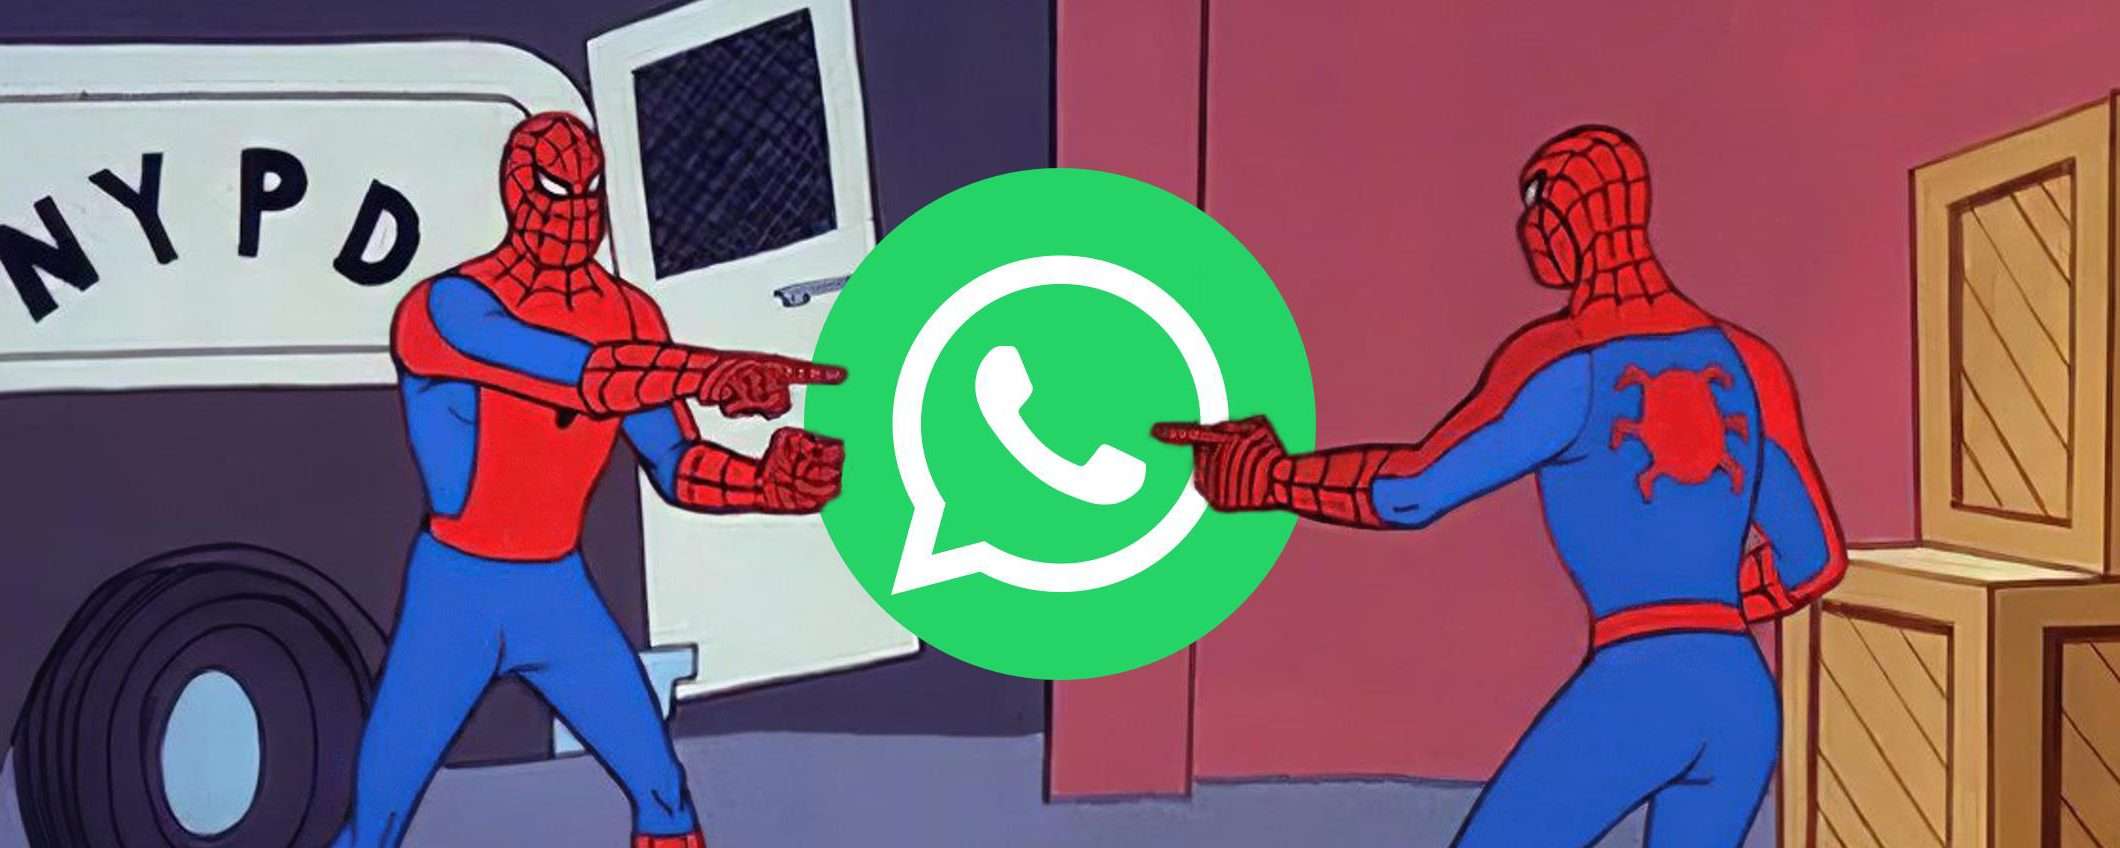 WhatsApp ti piace ma non hai amici? Allora scrivi a te stesso